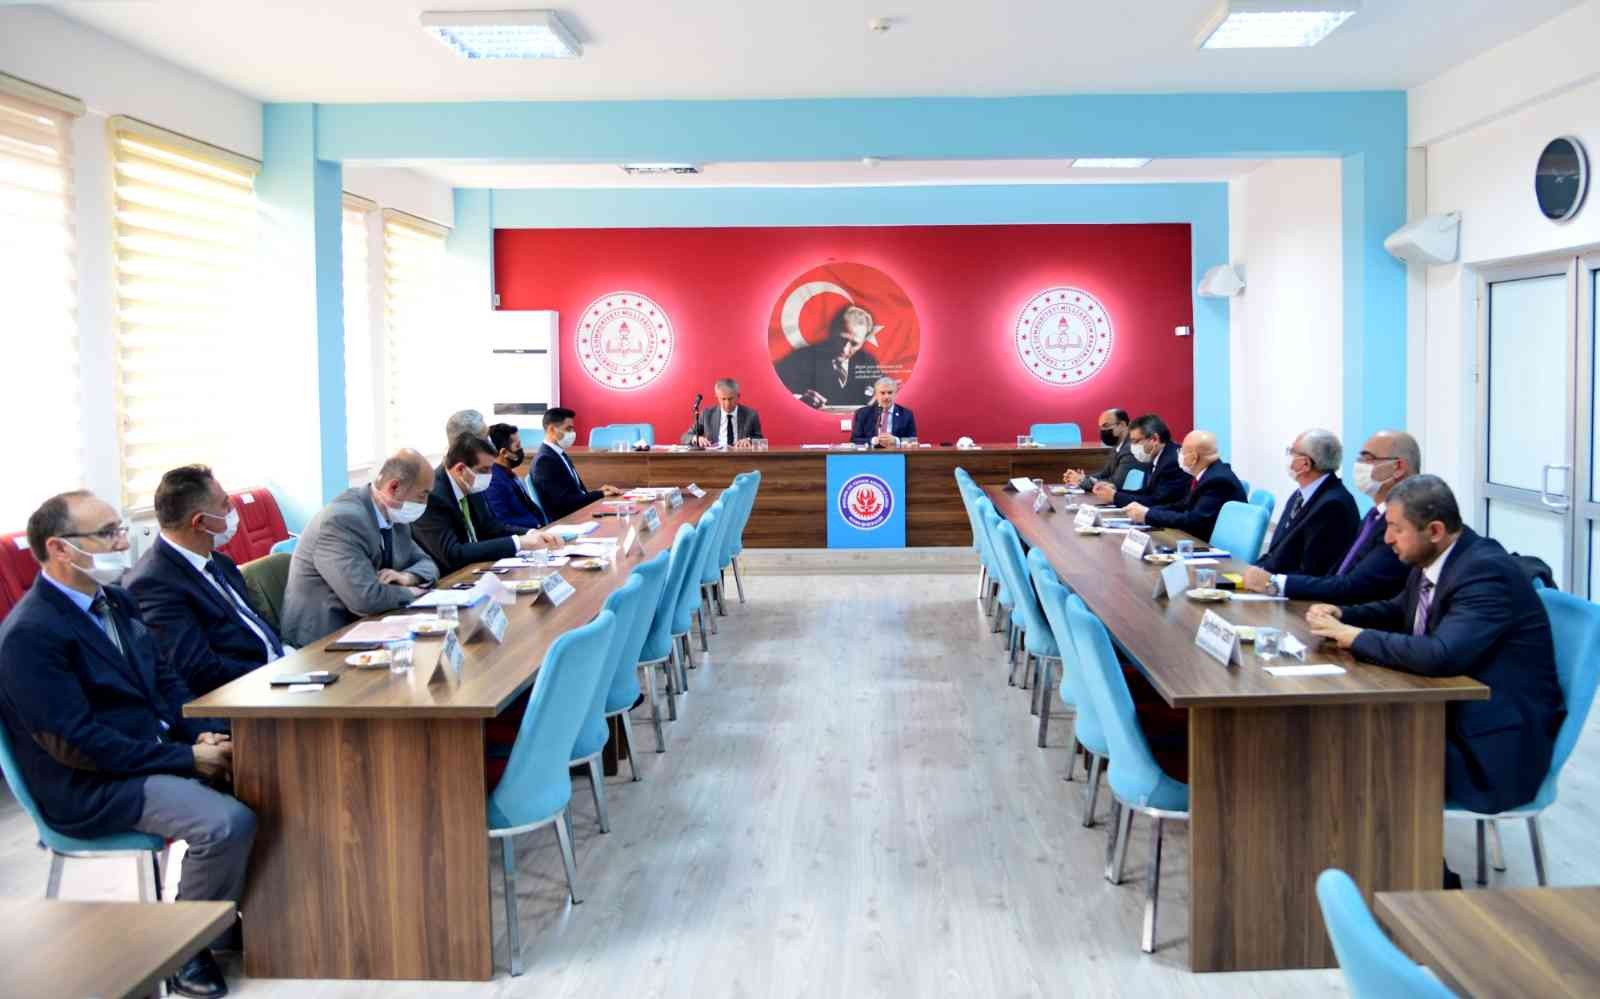 Kırşehir’de Akademik Gelişimi Destekleme Projesi Değerlendirildi #kirsehir